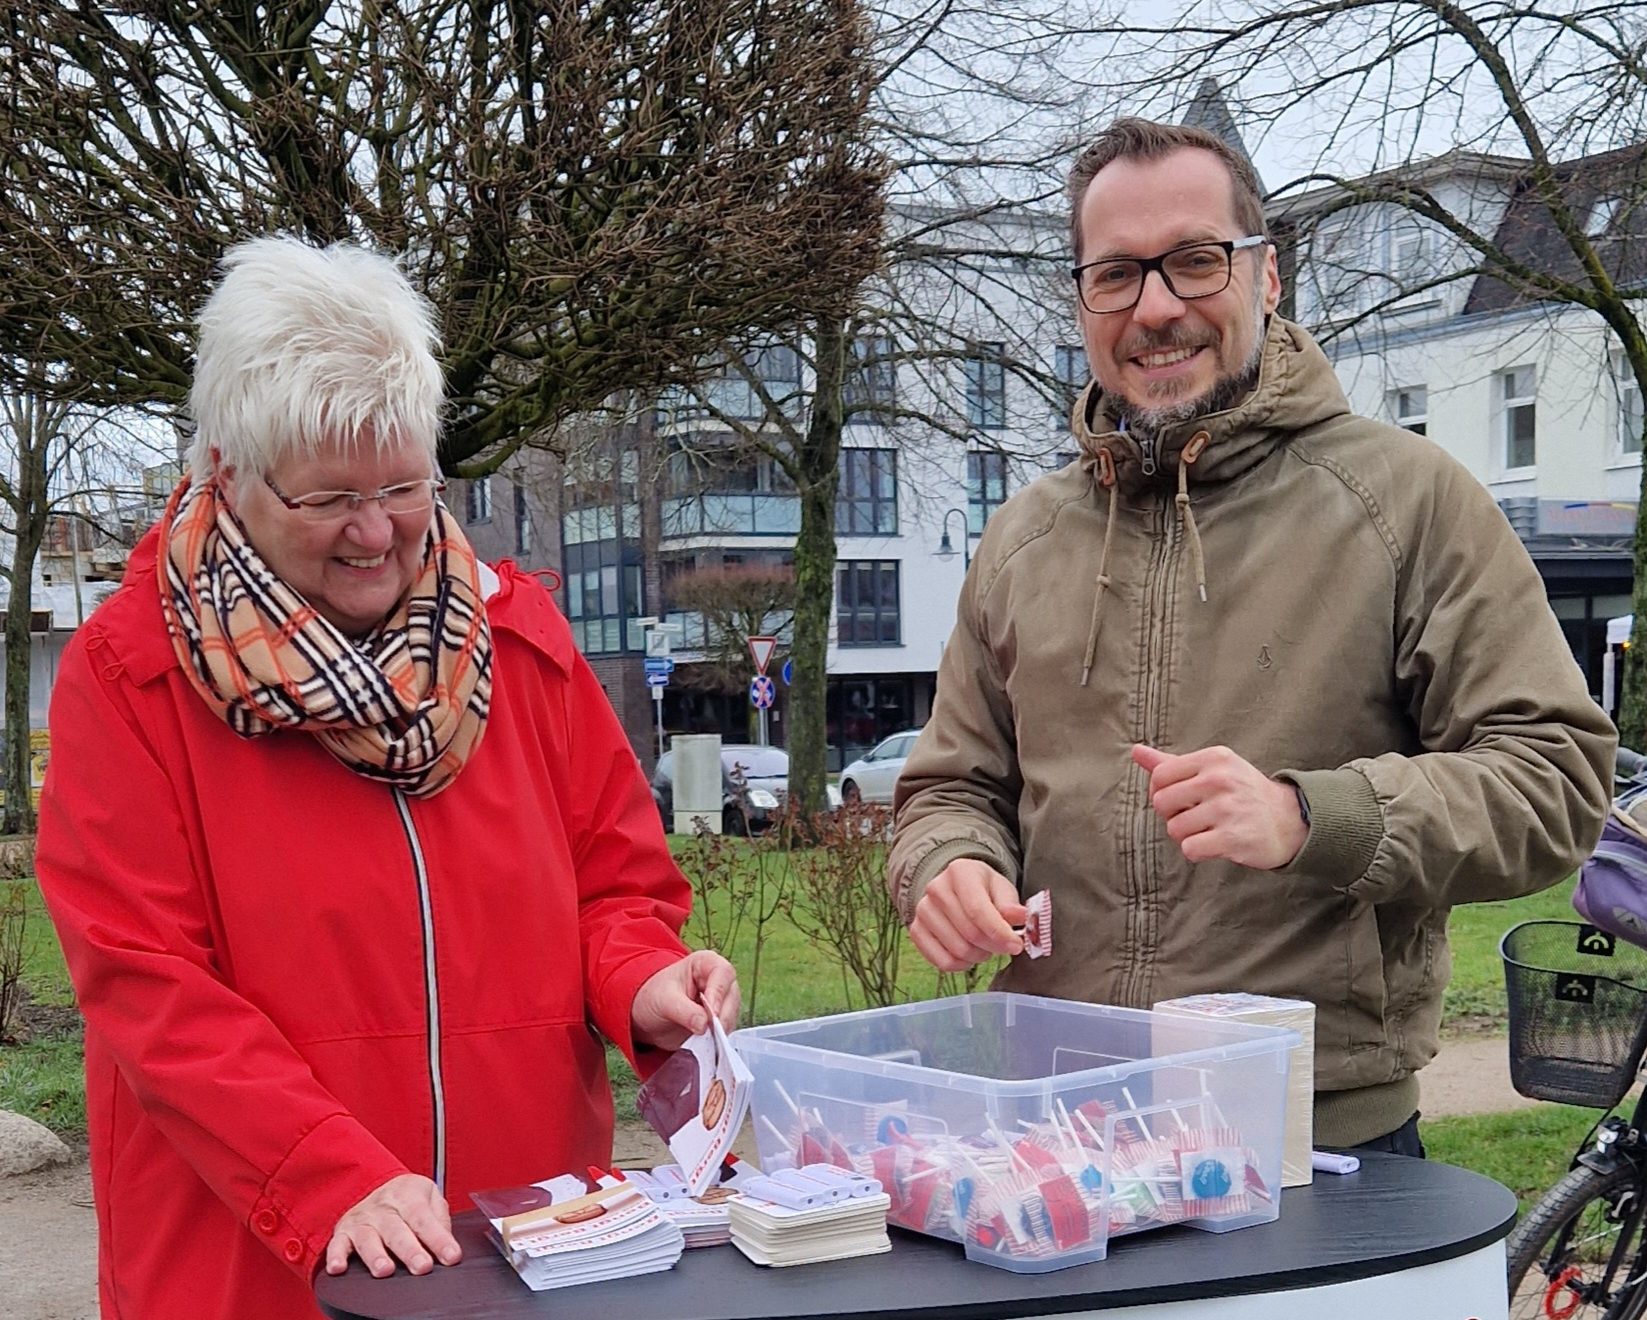 Die Fraktionsvorsitzende der SPD Kaltenkirchen, Susanne Steenbuck, und Bengt Bergt freuten sich über das rege Interesse der Menschen am Infostand.